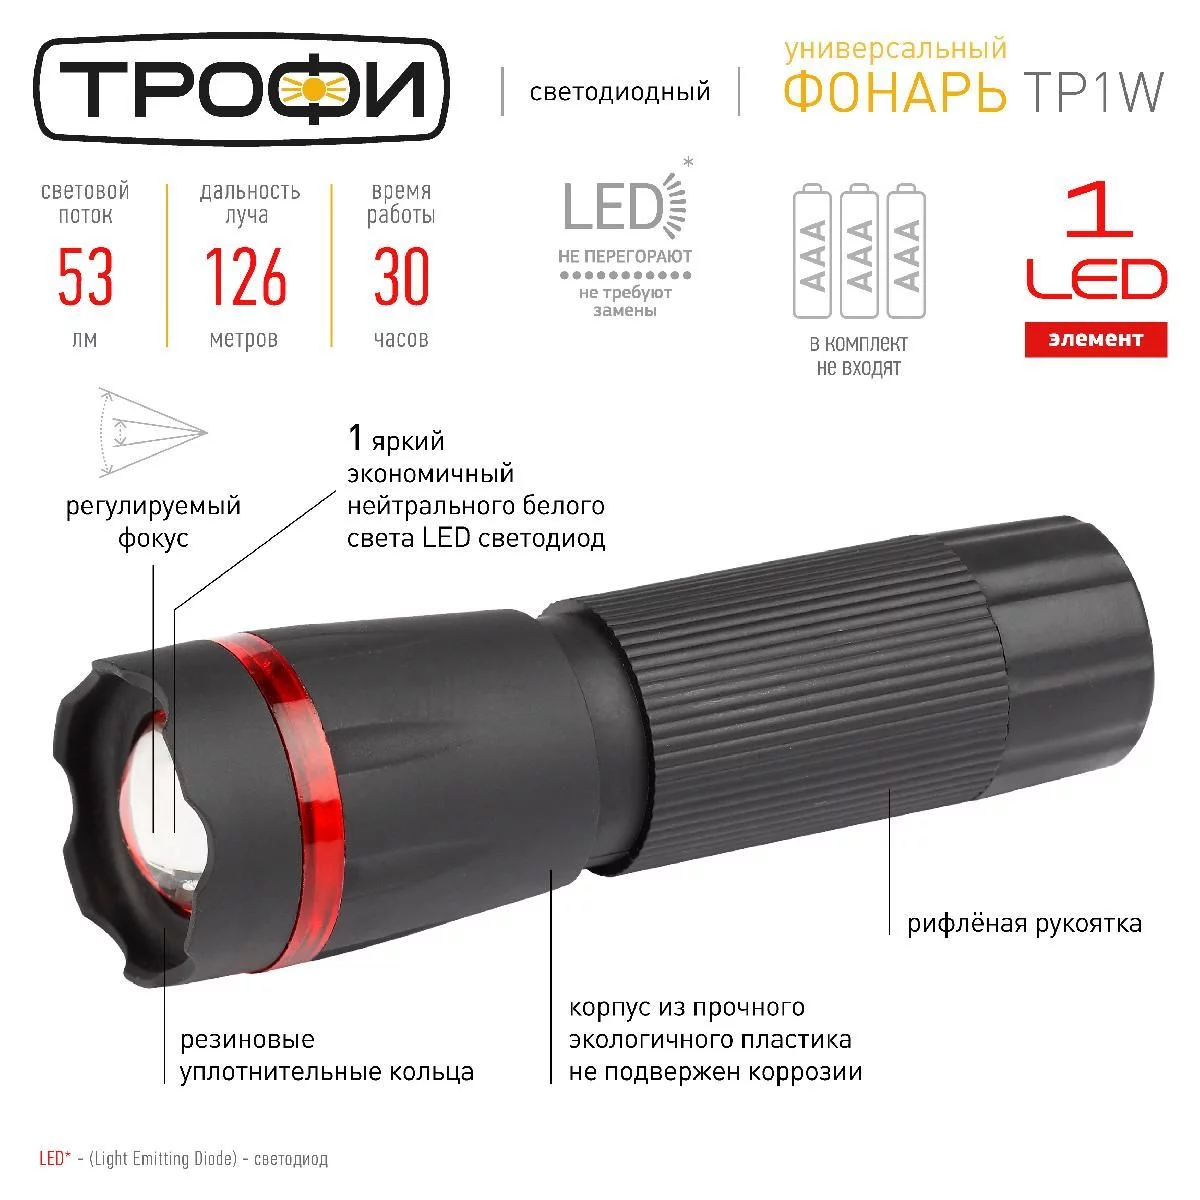 Светодиодный фонарь Трофи TP1W ручной на батарейках с регулируемым фокусом